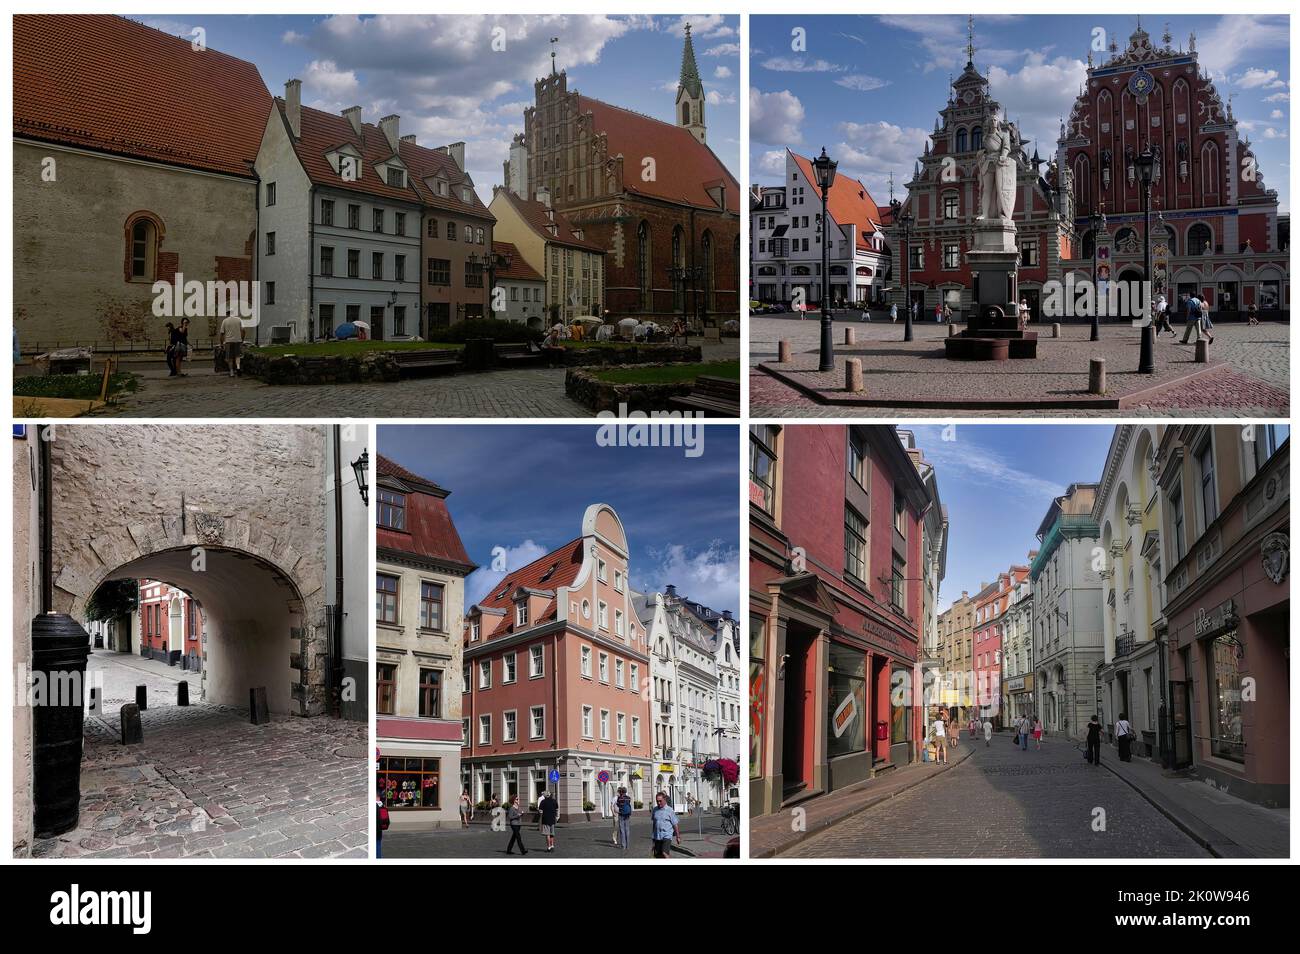 Die wunderschöne Altstadt von Riga (Lettland) mit ihren charakteristischen Gebäuden und ihren gepflasterten Gassen. Seit 1997 UNESCO-Weltkulturerbe (2) Stockfoto